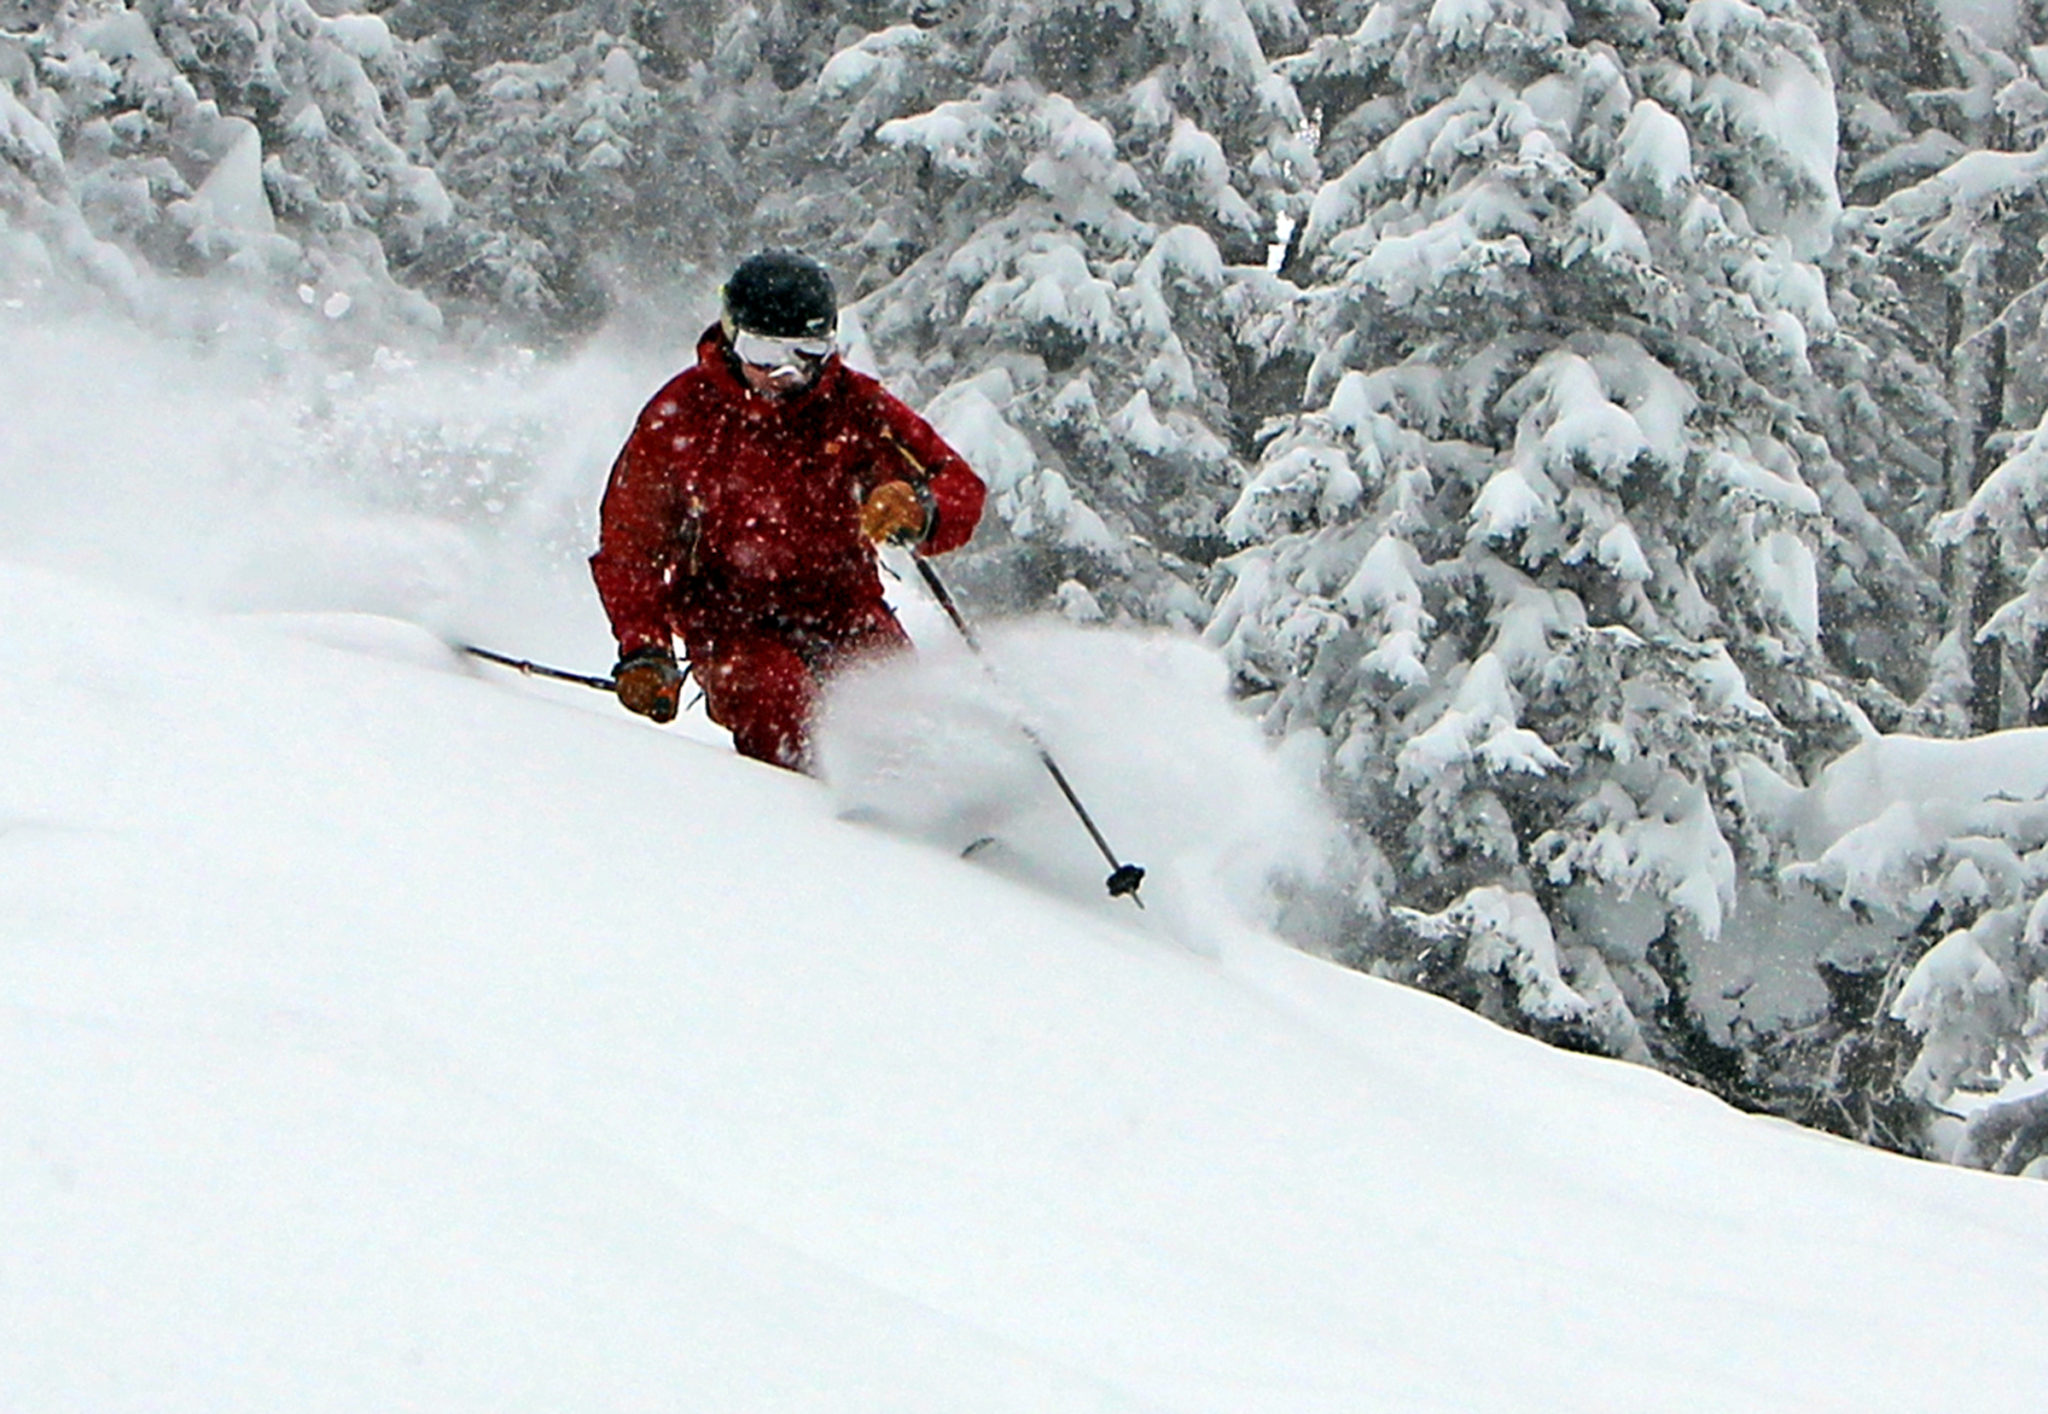 Skier untracked powder snow ghosts